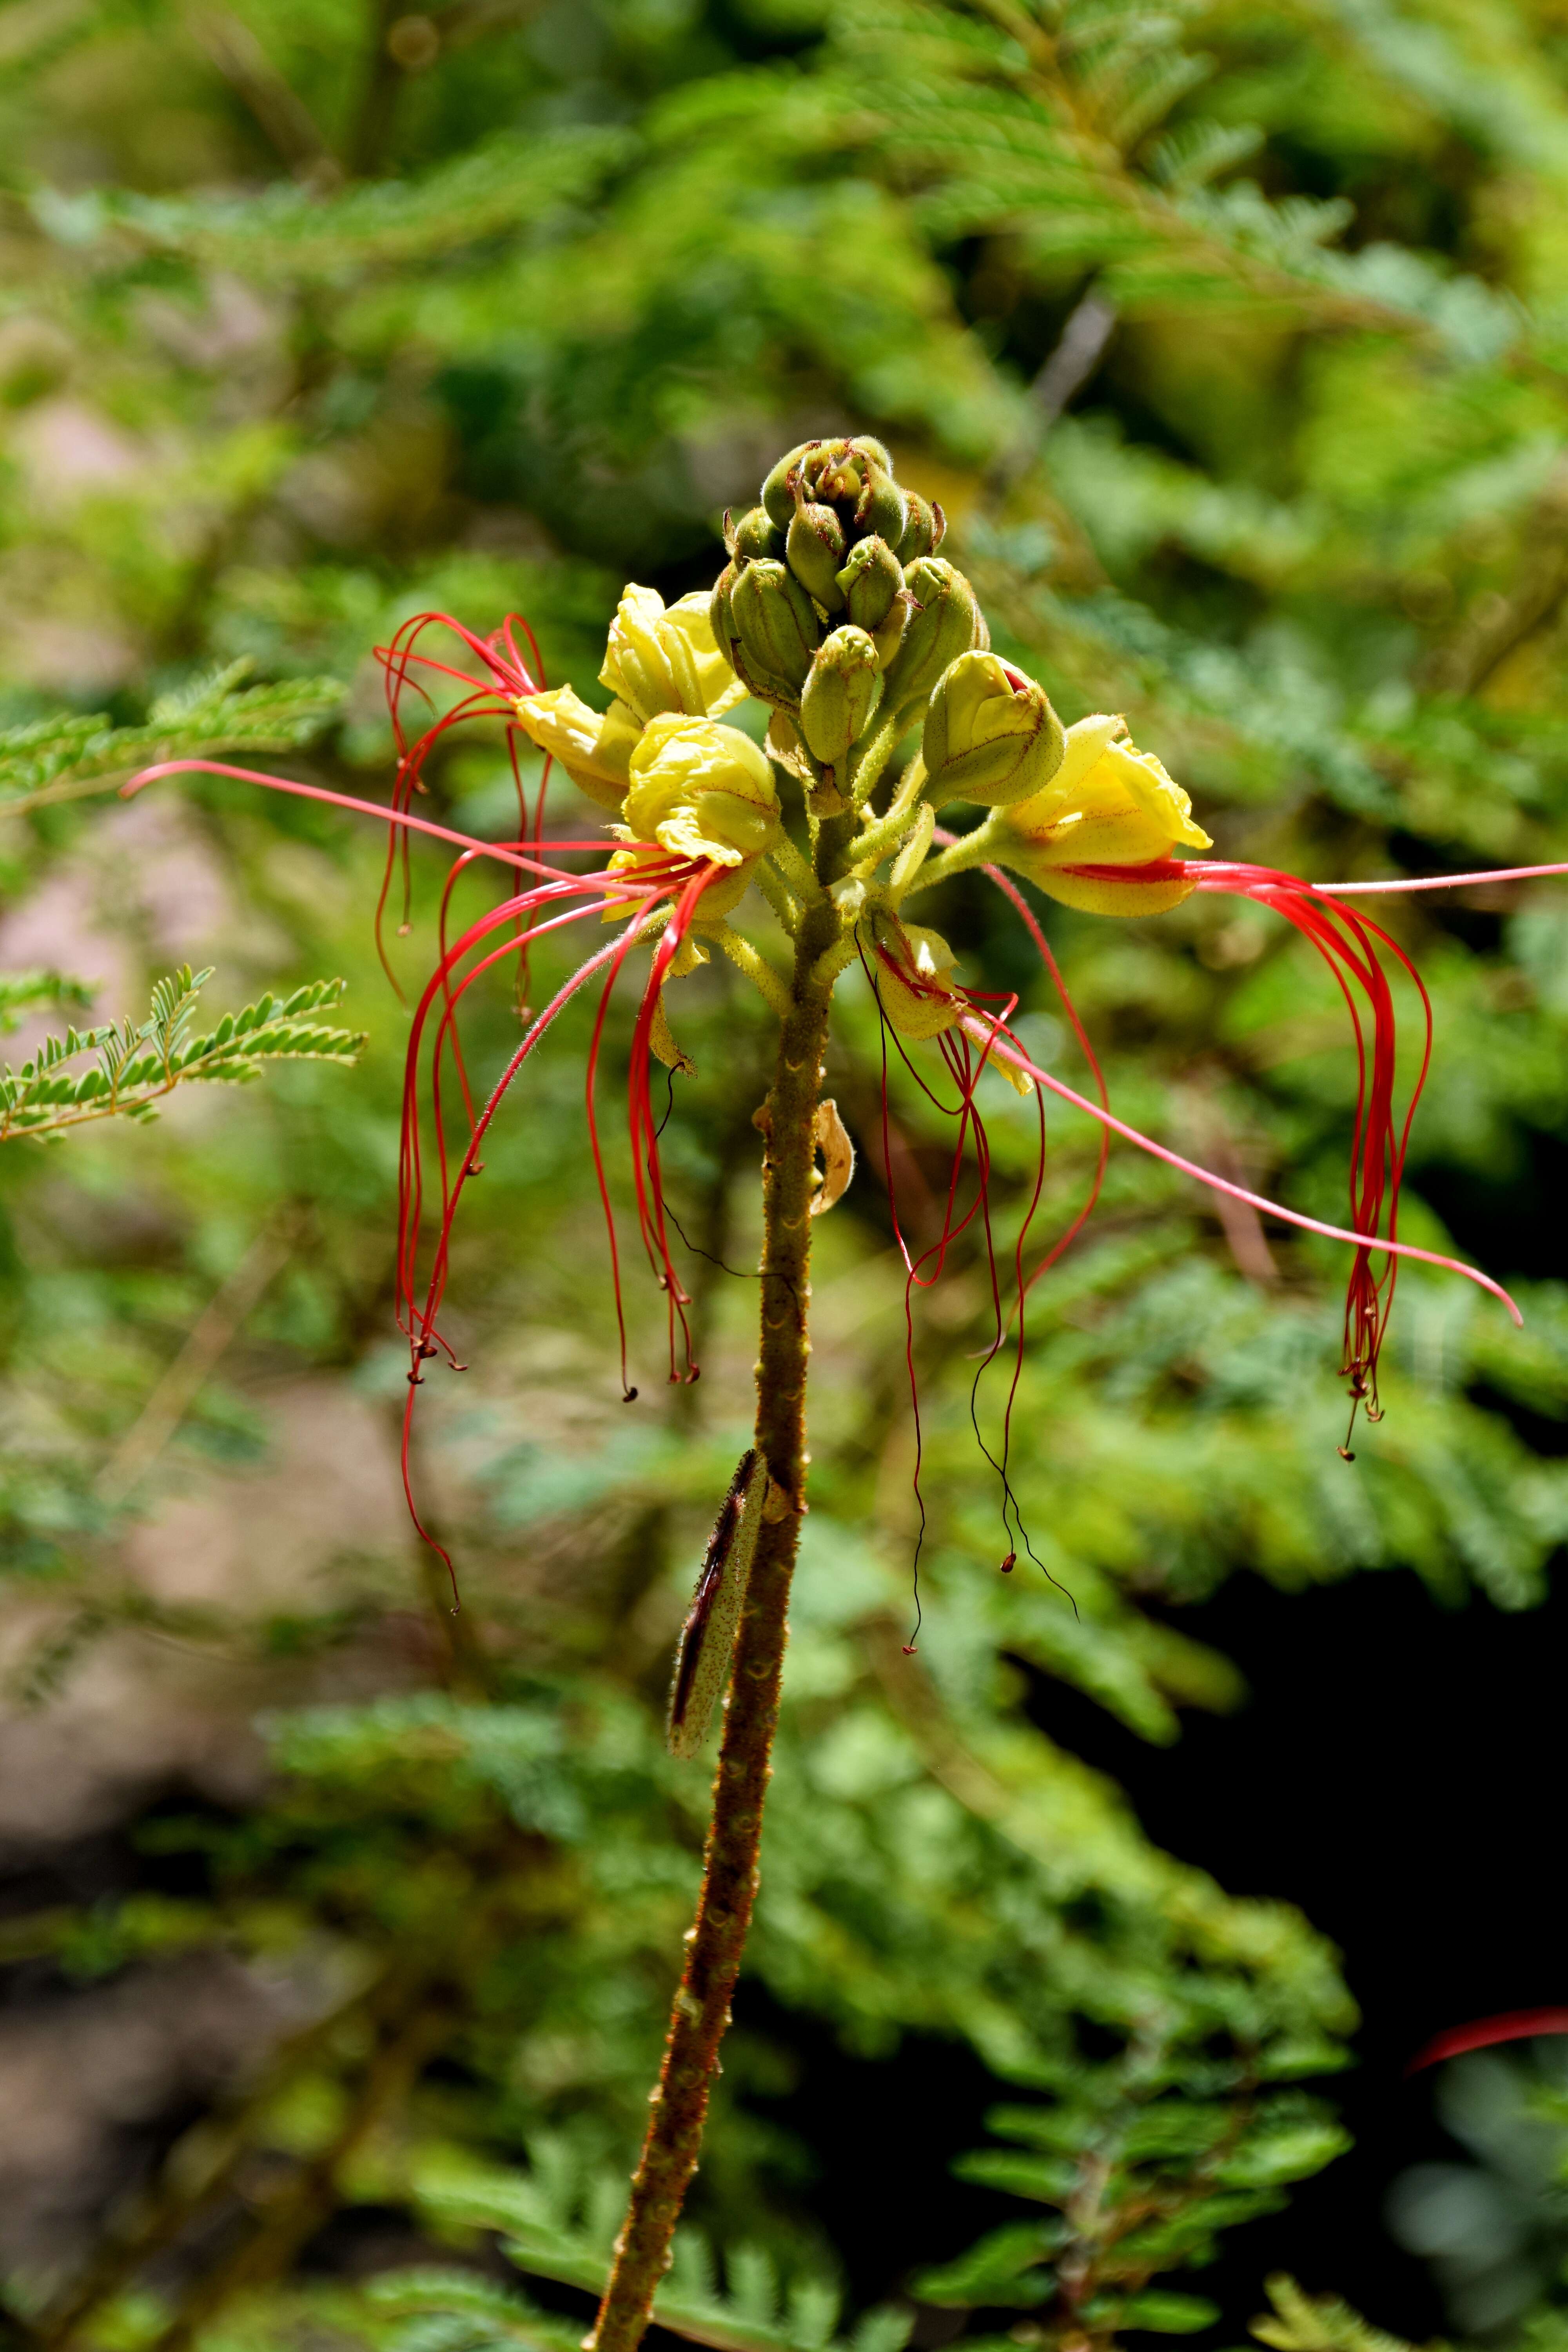 Image of bird-of-paradise shrub